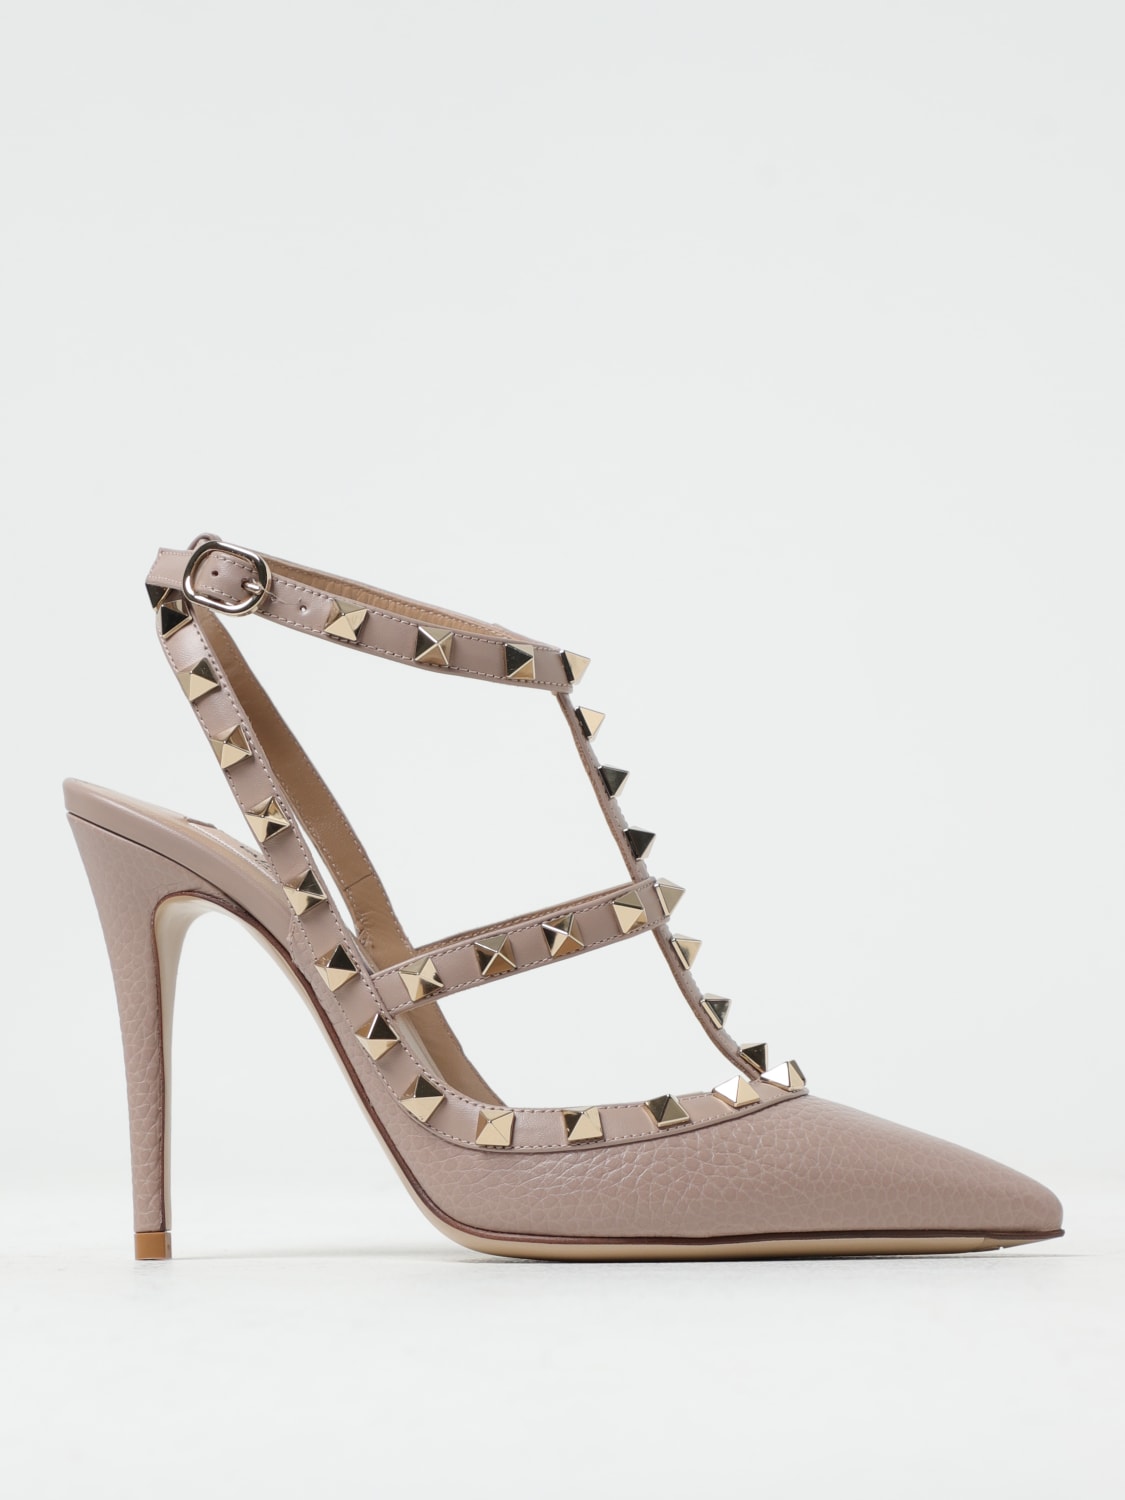 VALENTINO GARAVANI: pumps in grained leather - Blush Pink | Valentino Garavani high heel shoes 3W2S0393VCE online at